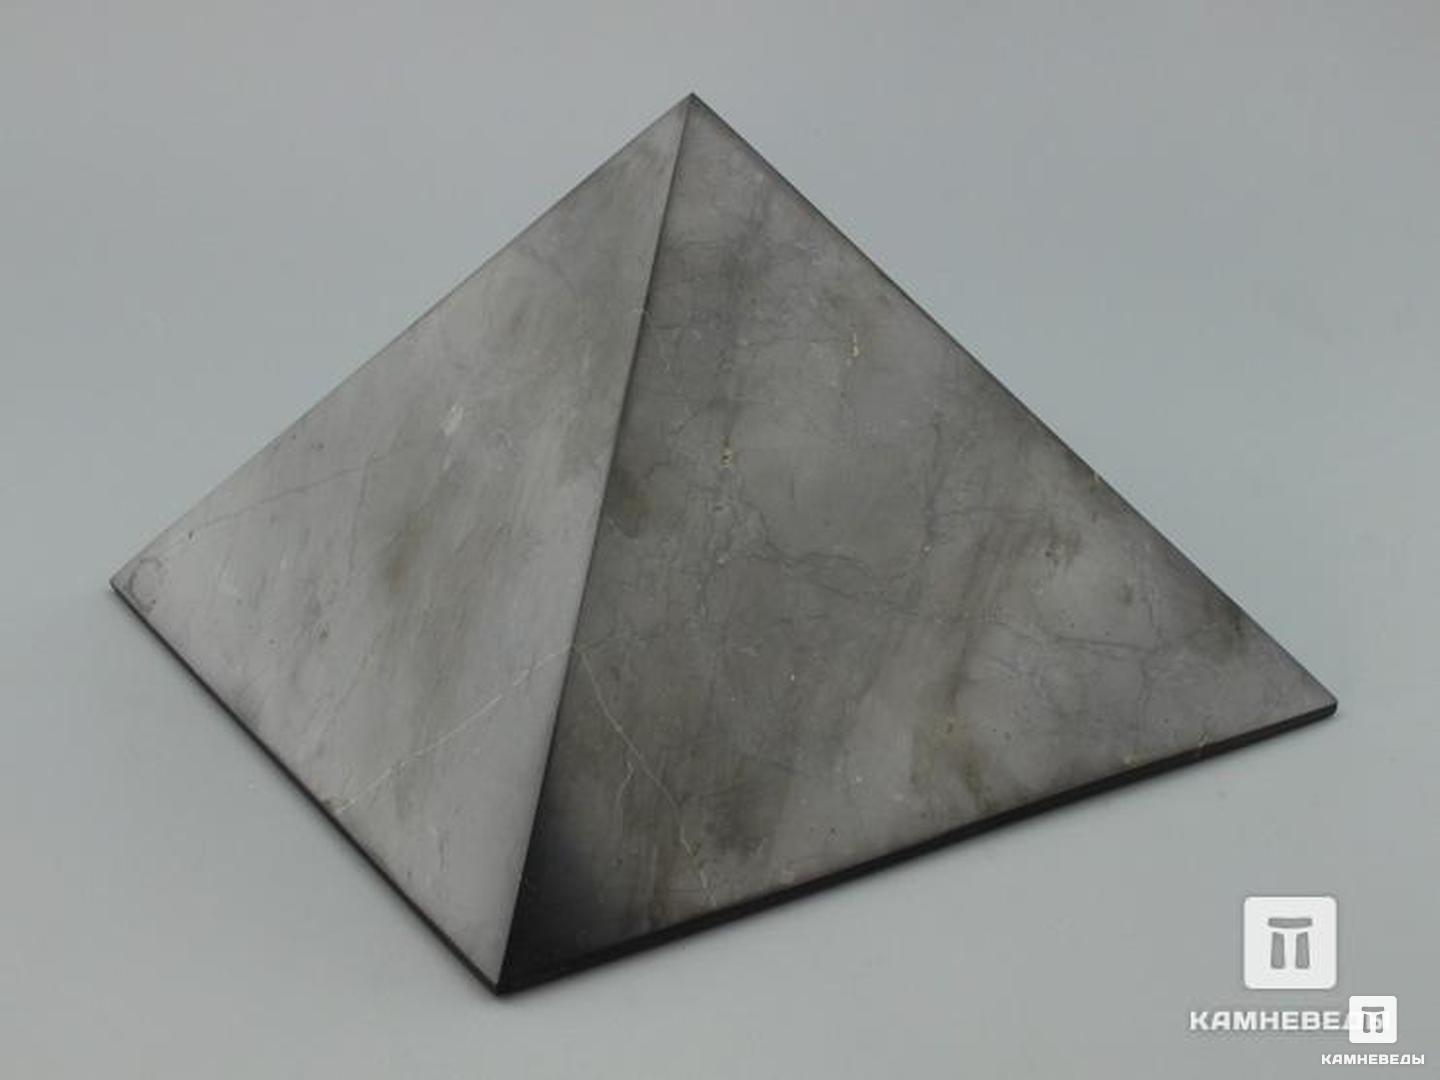 Пирамида из шунгита, полированная 15х15 см пирамида из шунгита 3 см высокая восьмигранная полированная